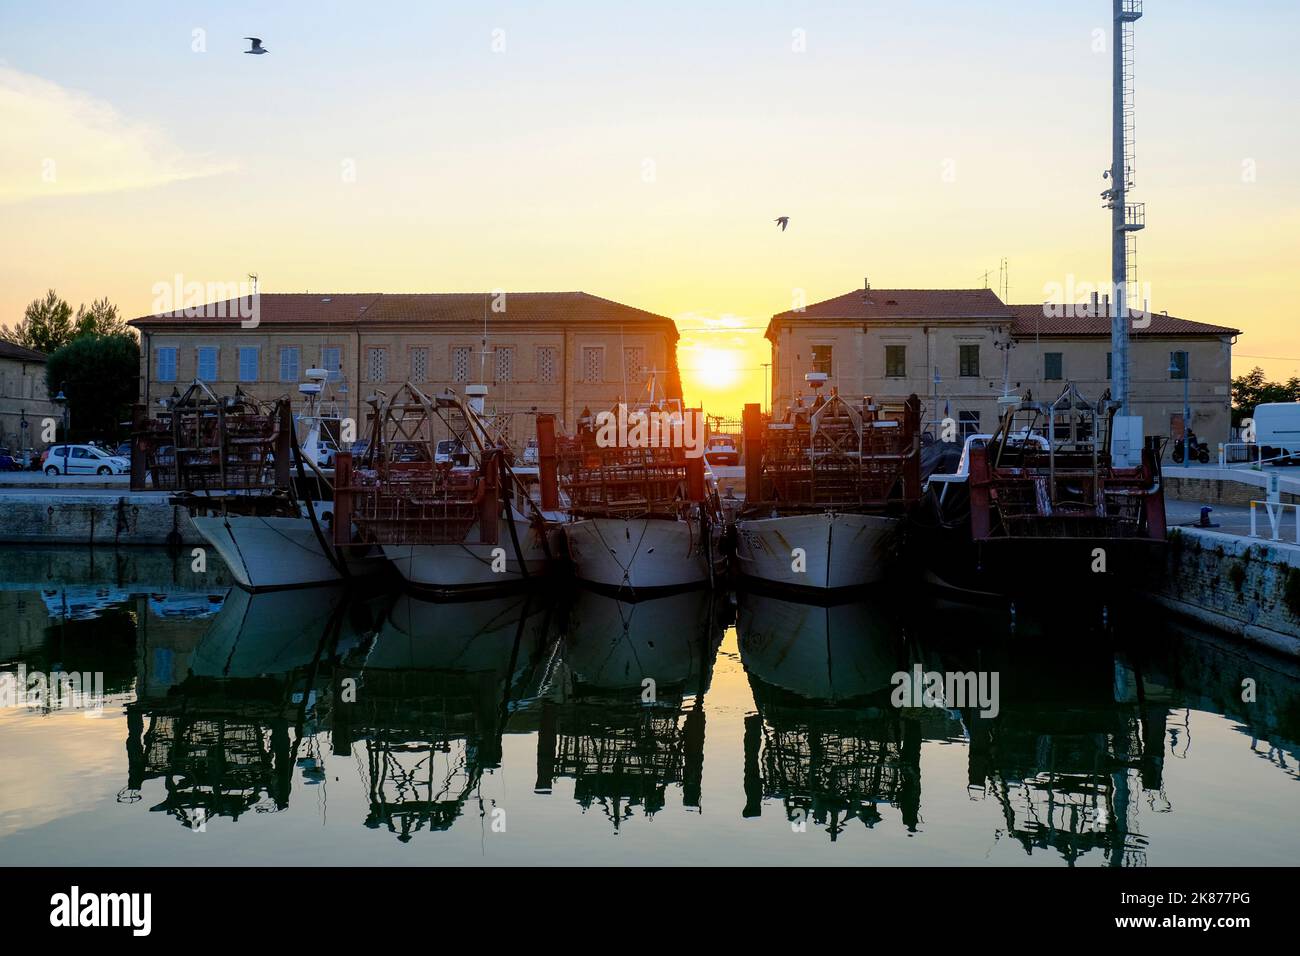 Küste und Skyline der Stadt bei Sonnenuntergang in Senigallia, Marken, Italien. Stadthintergrund. Wasserspiegelungen, Wellen in den Abendlichtern Stockfoto